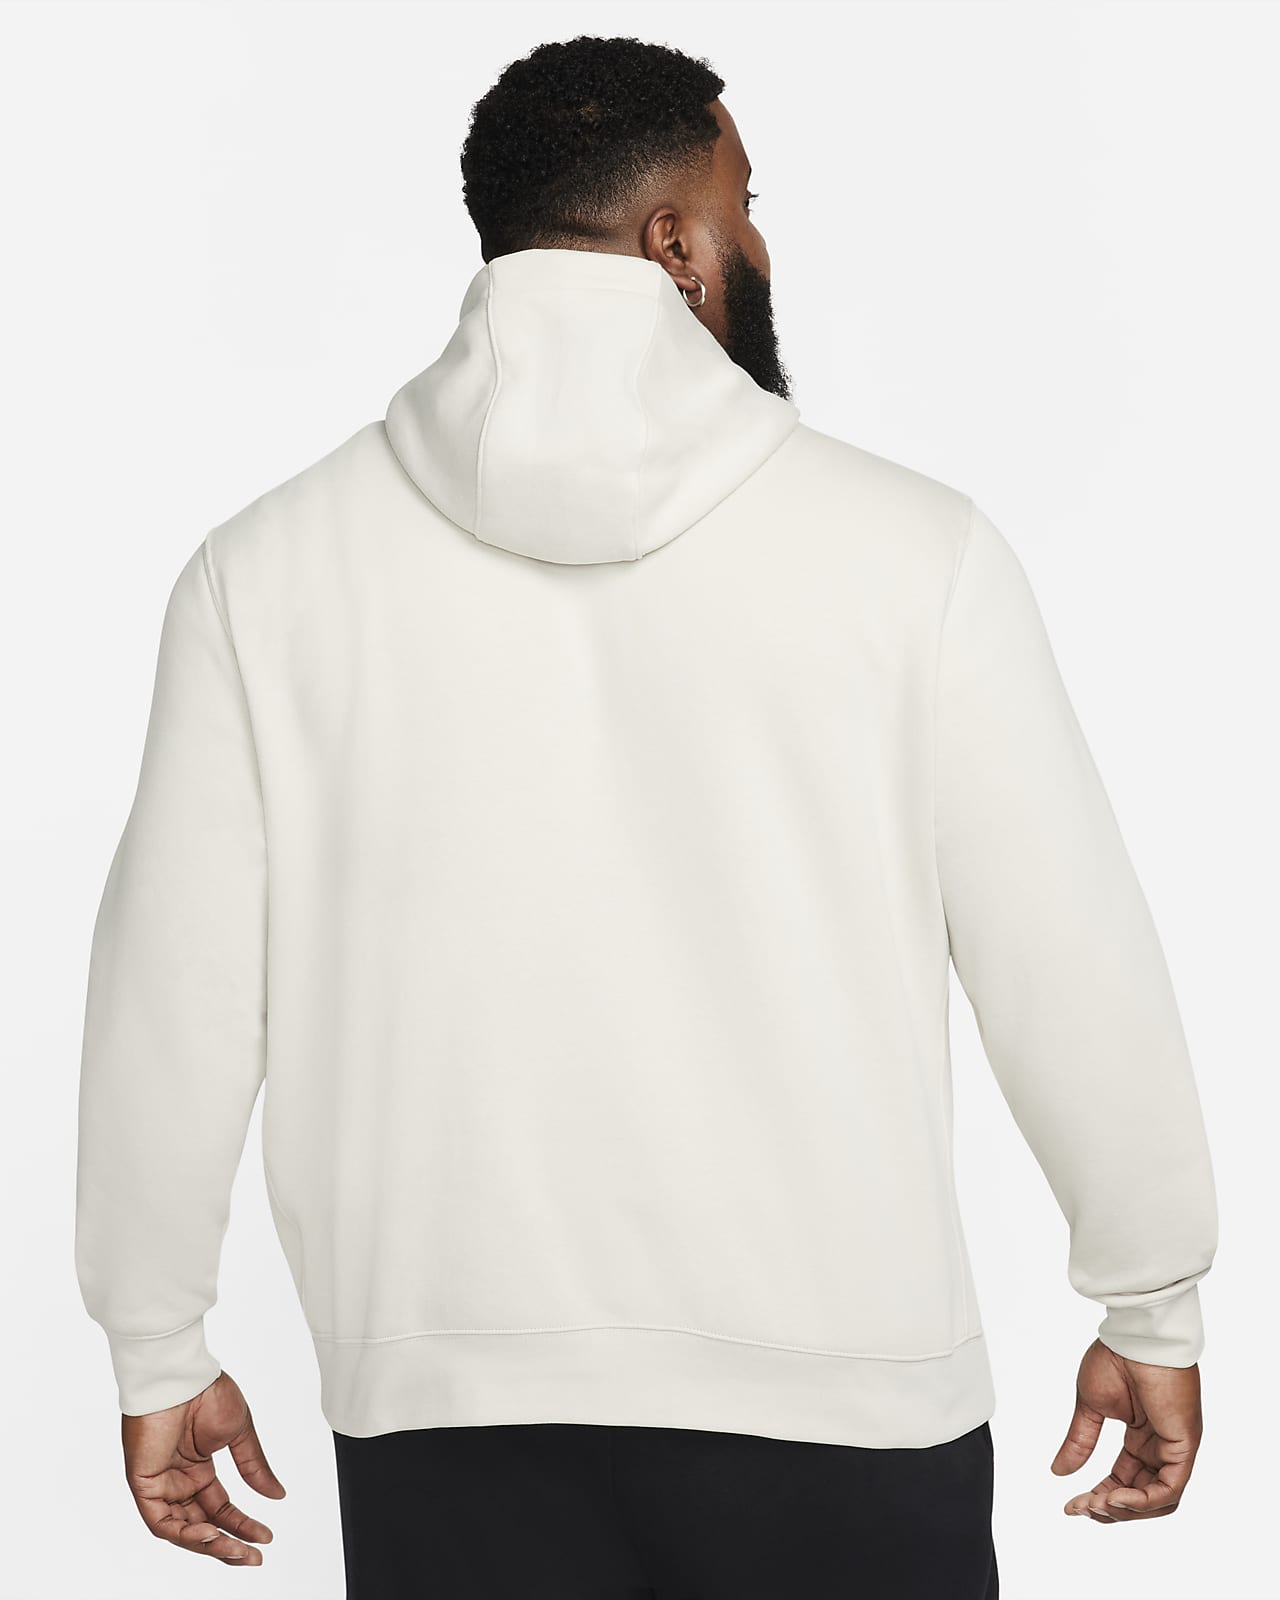 Nike Men's Sportswear Club Jersey Pullover Hoodie